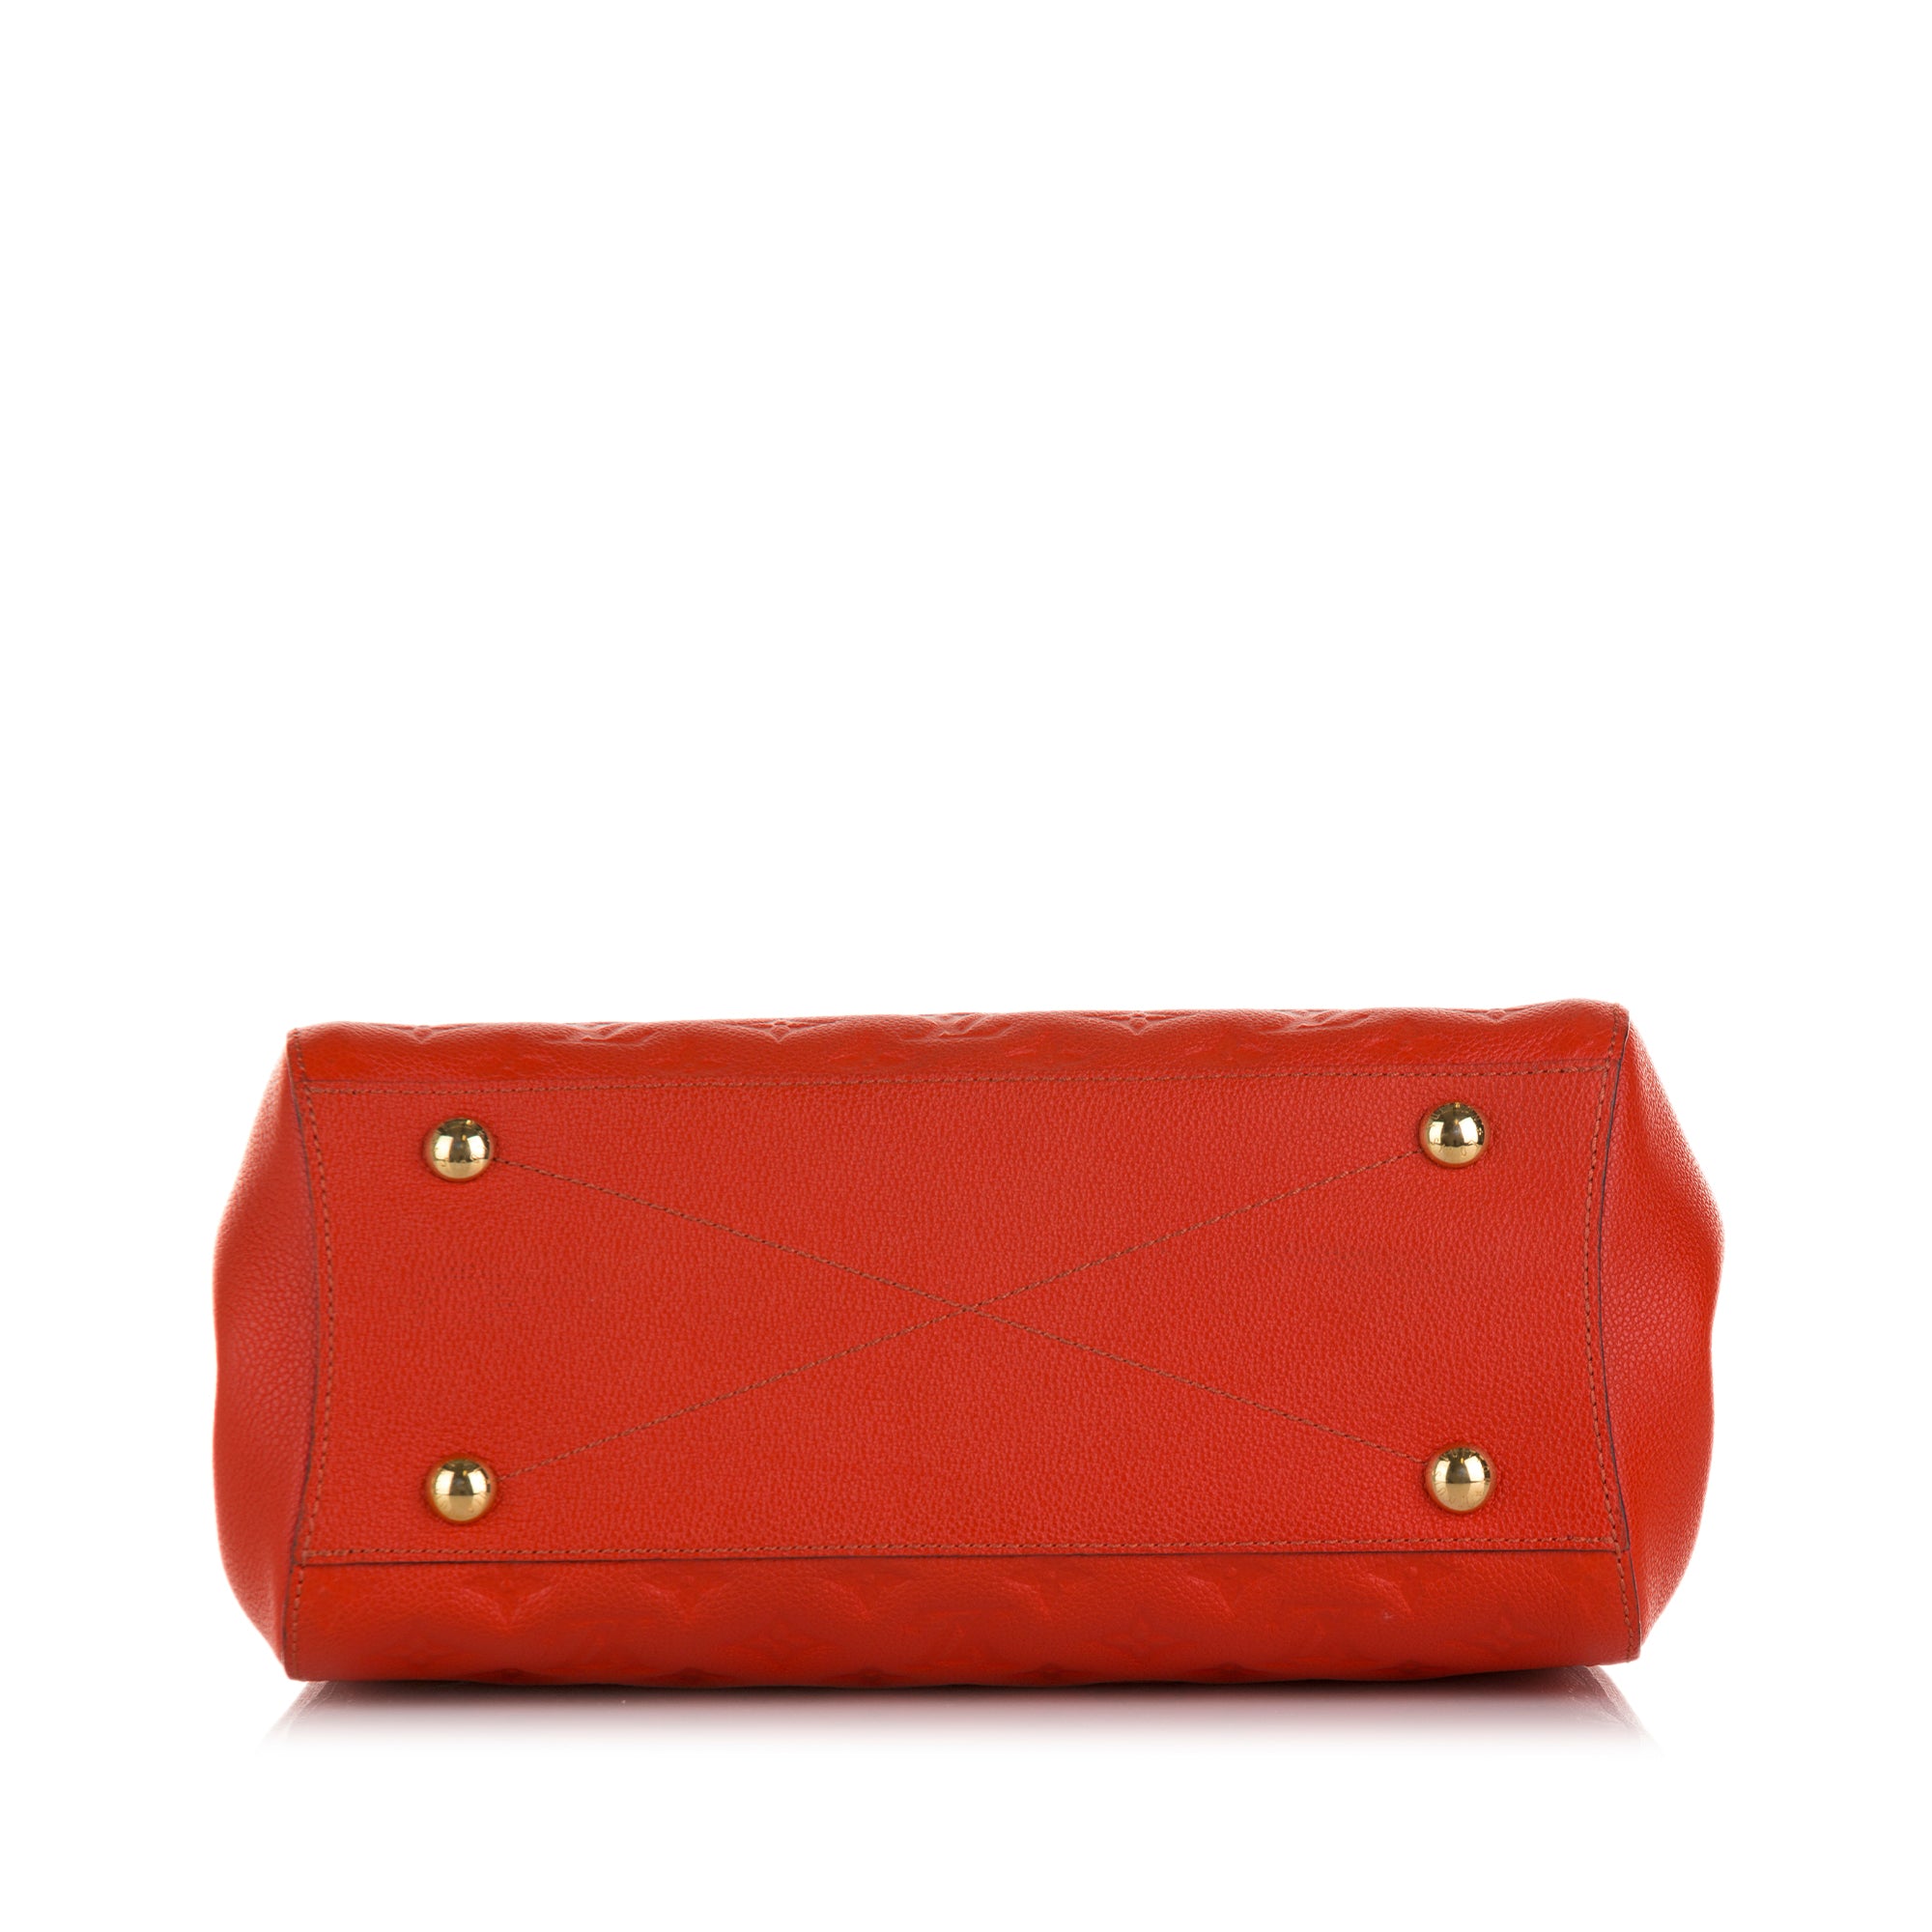 PRELOVED Louis Vuitton Montaigne MM Orange Empriente Monogram Leather –  KimmieBBags LLC